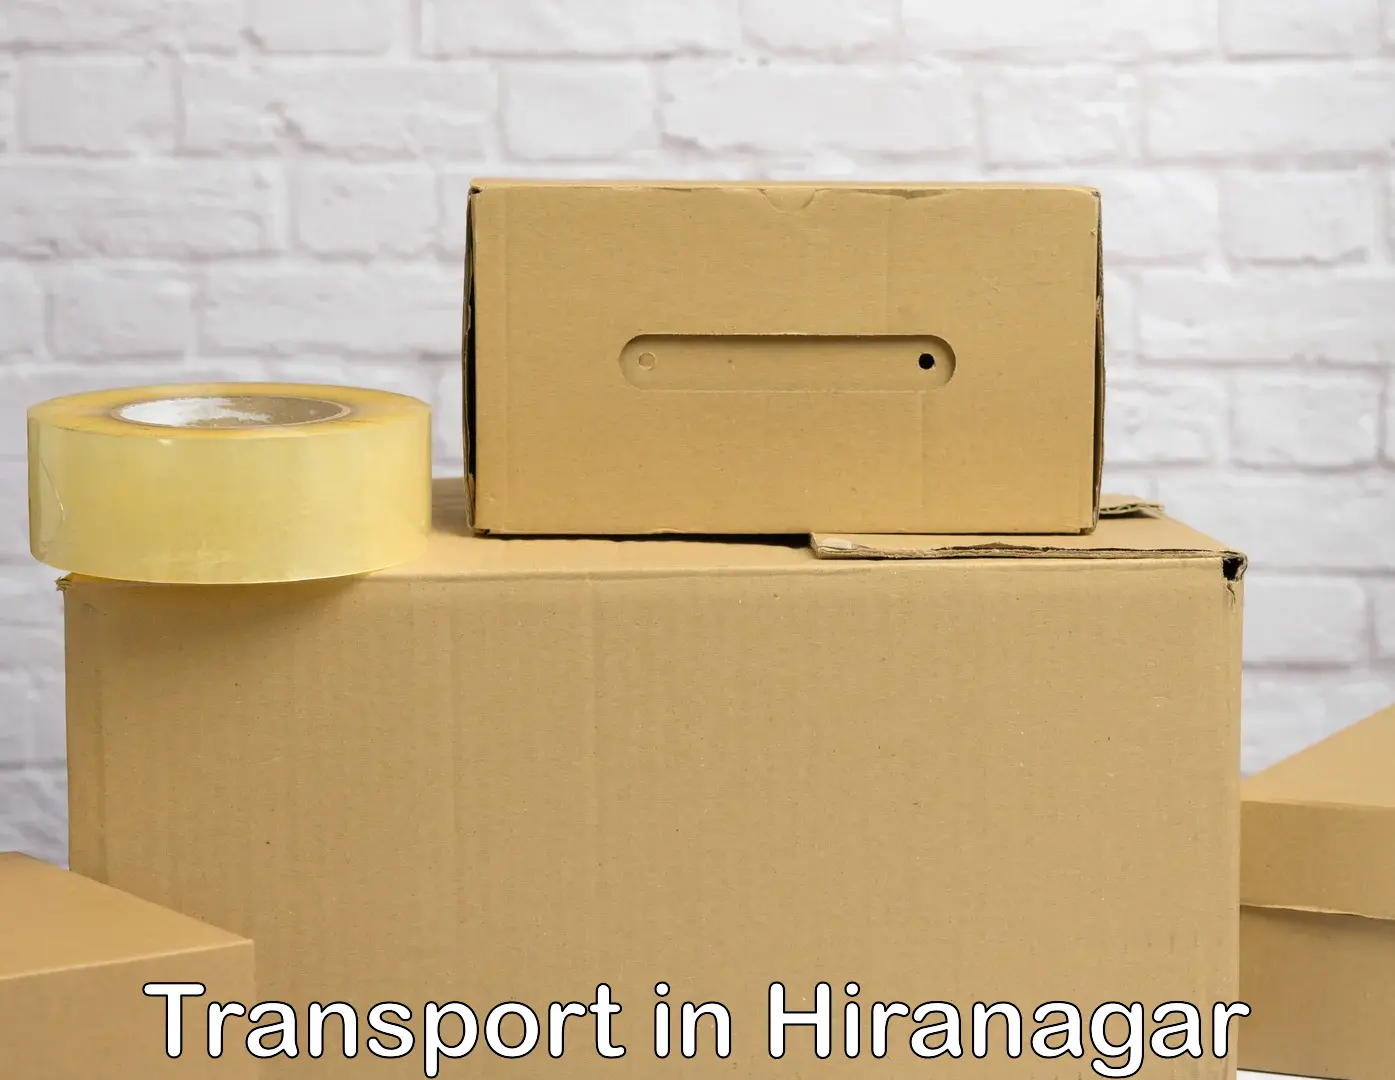 Transportation services in Hiranagar